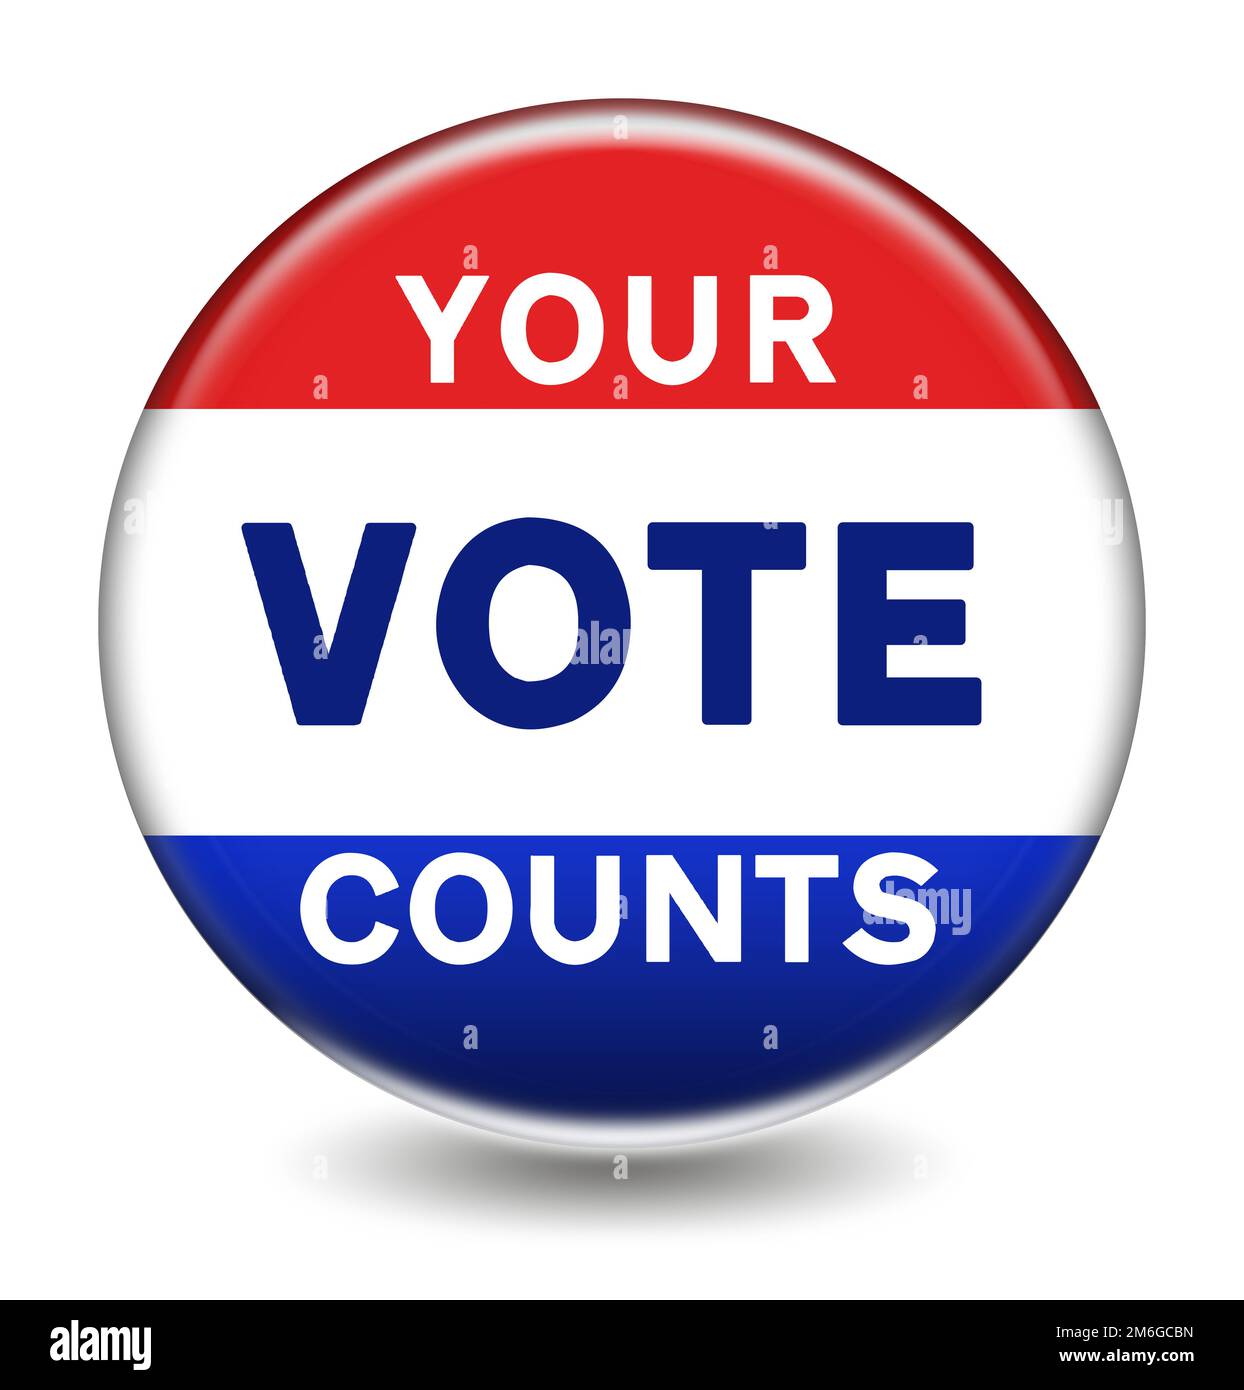 Votre vote compte - bouton de vote pour l'élection Banque D'Images